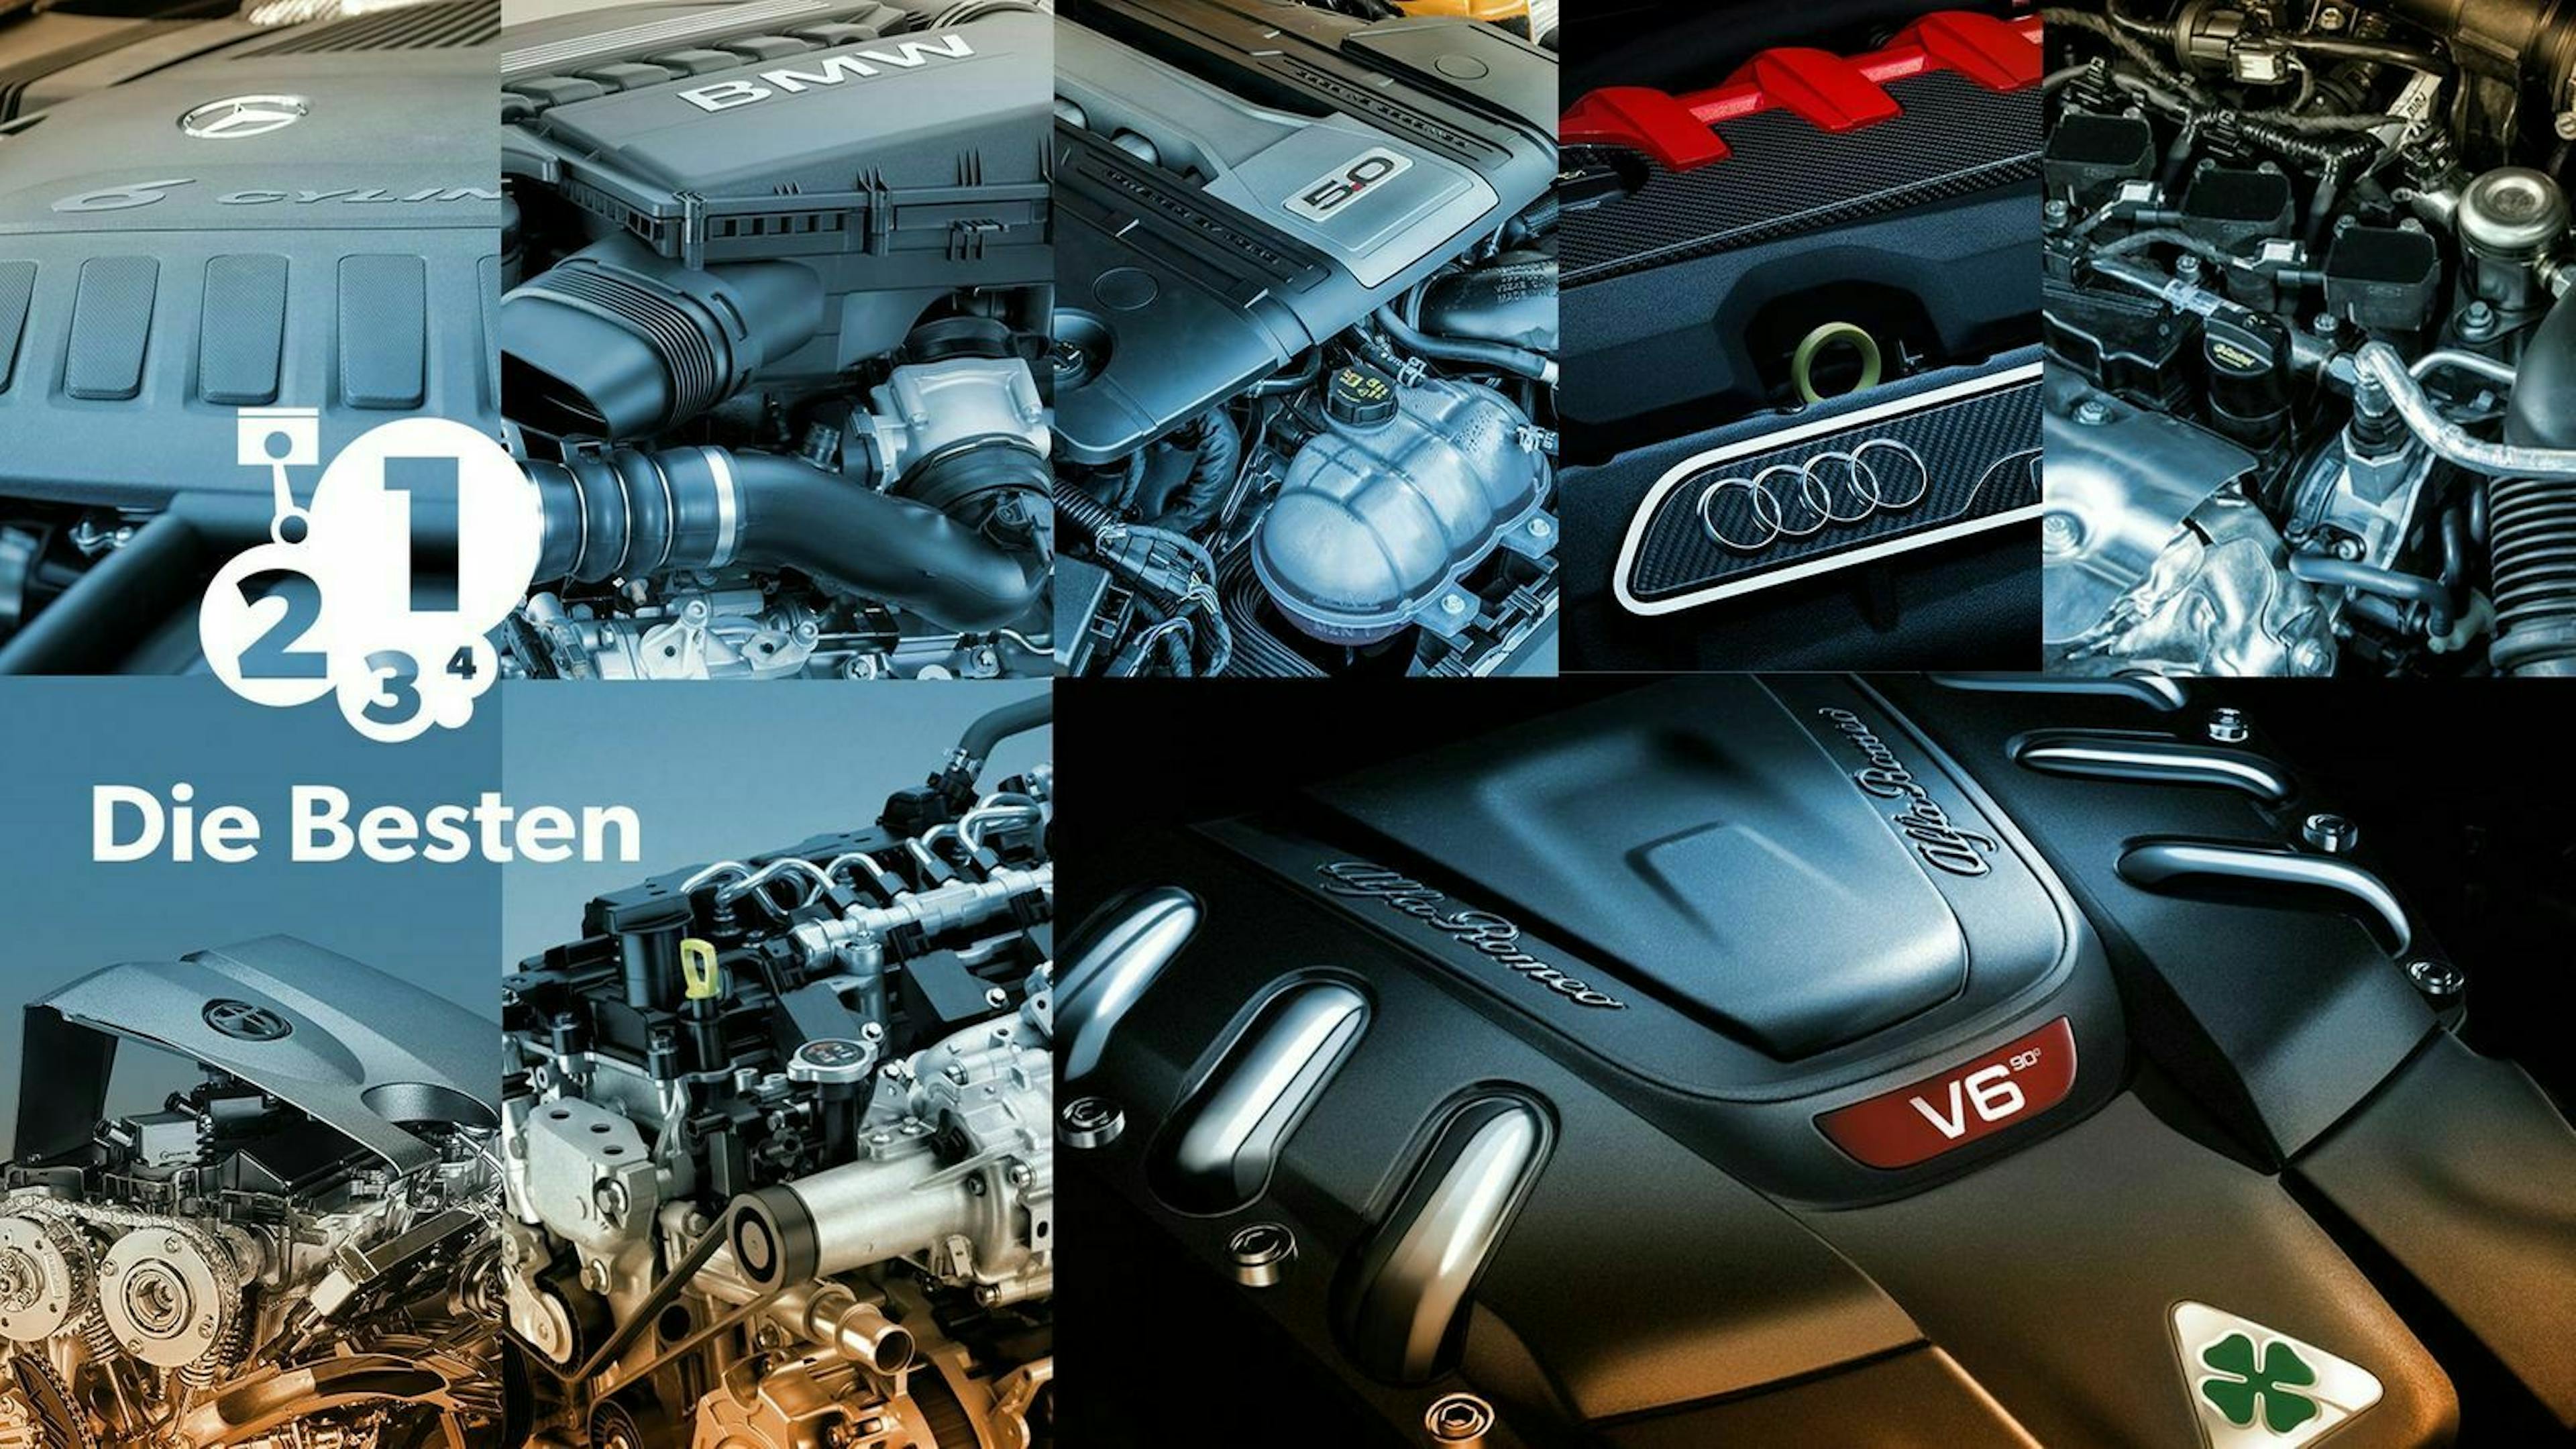 Teaserbild für die besten Motoren